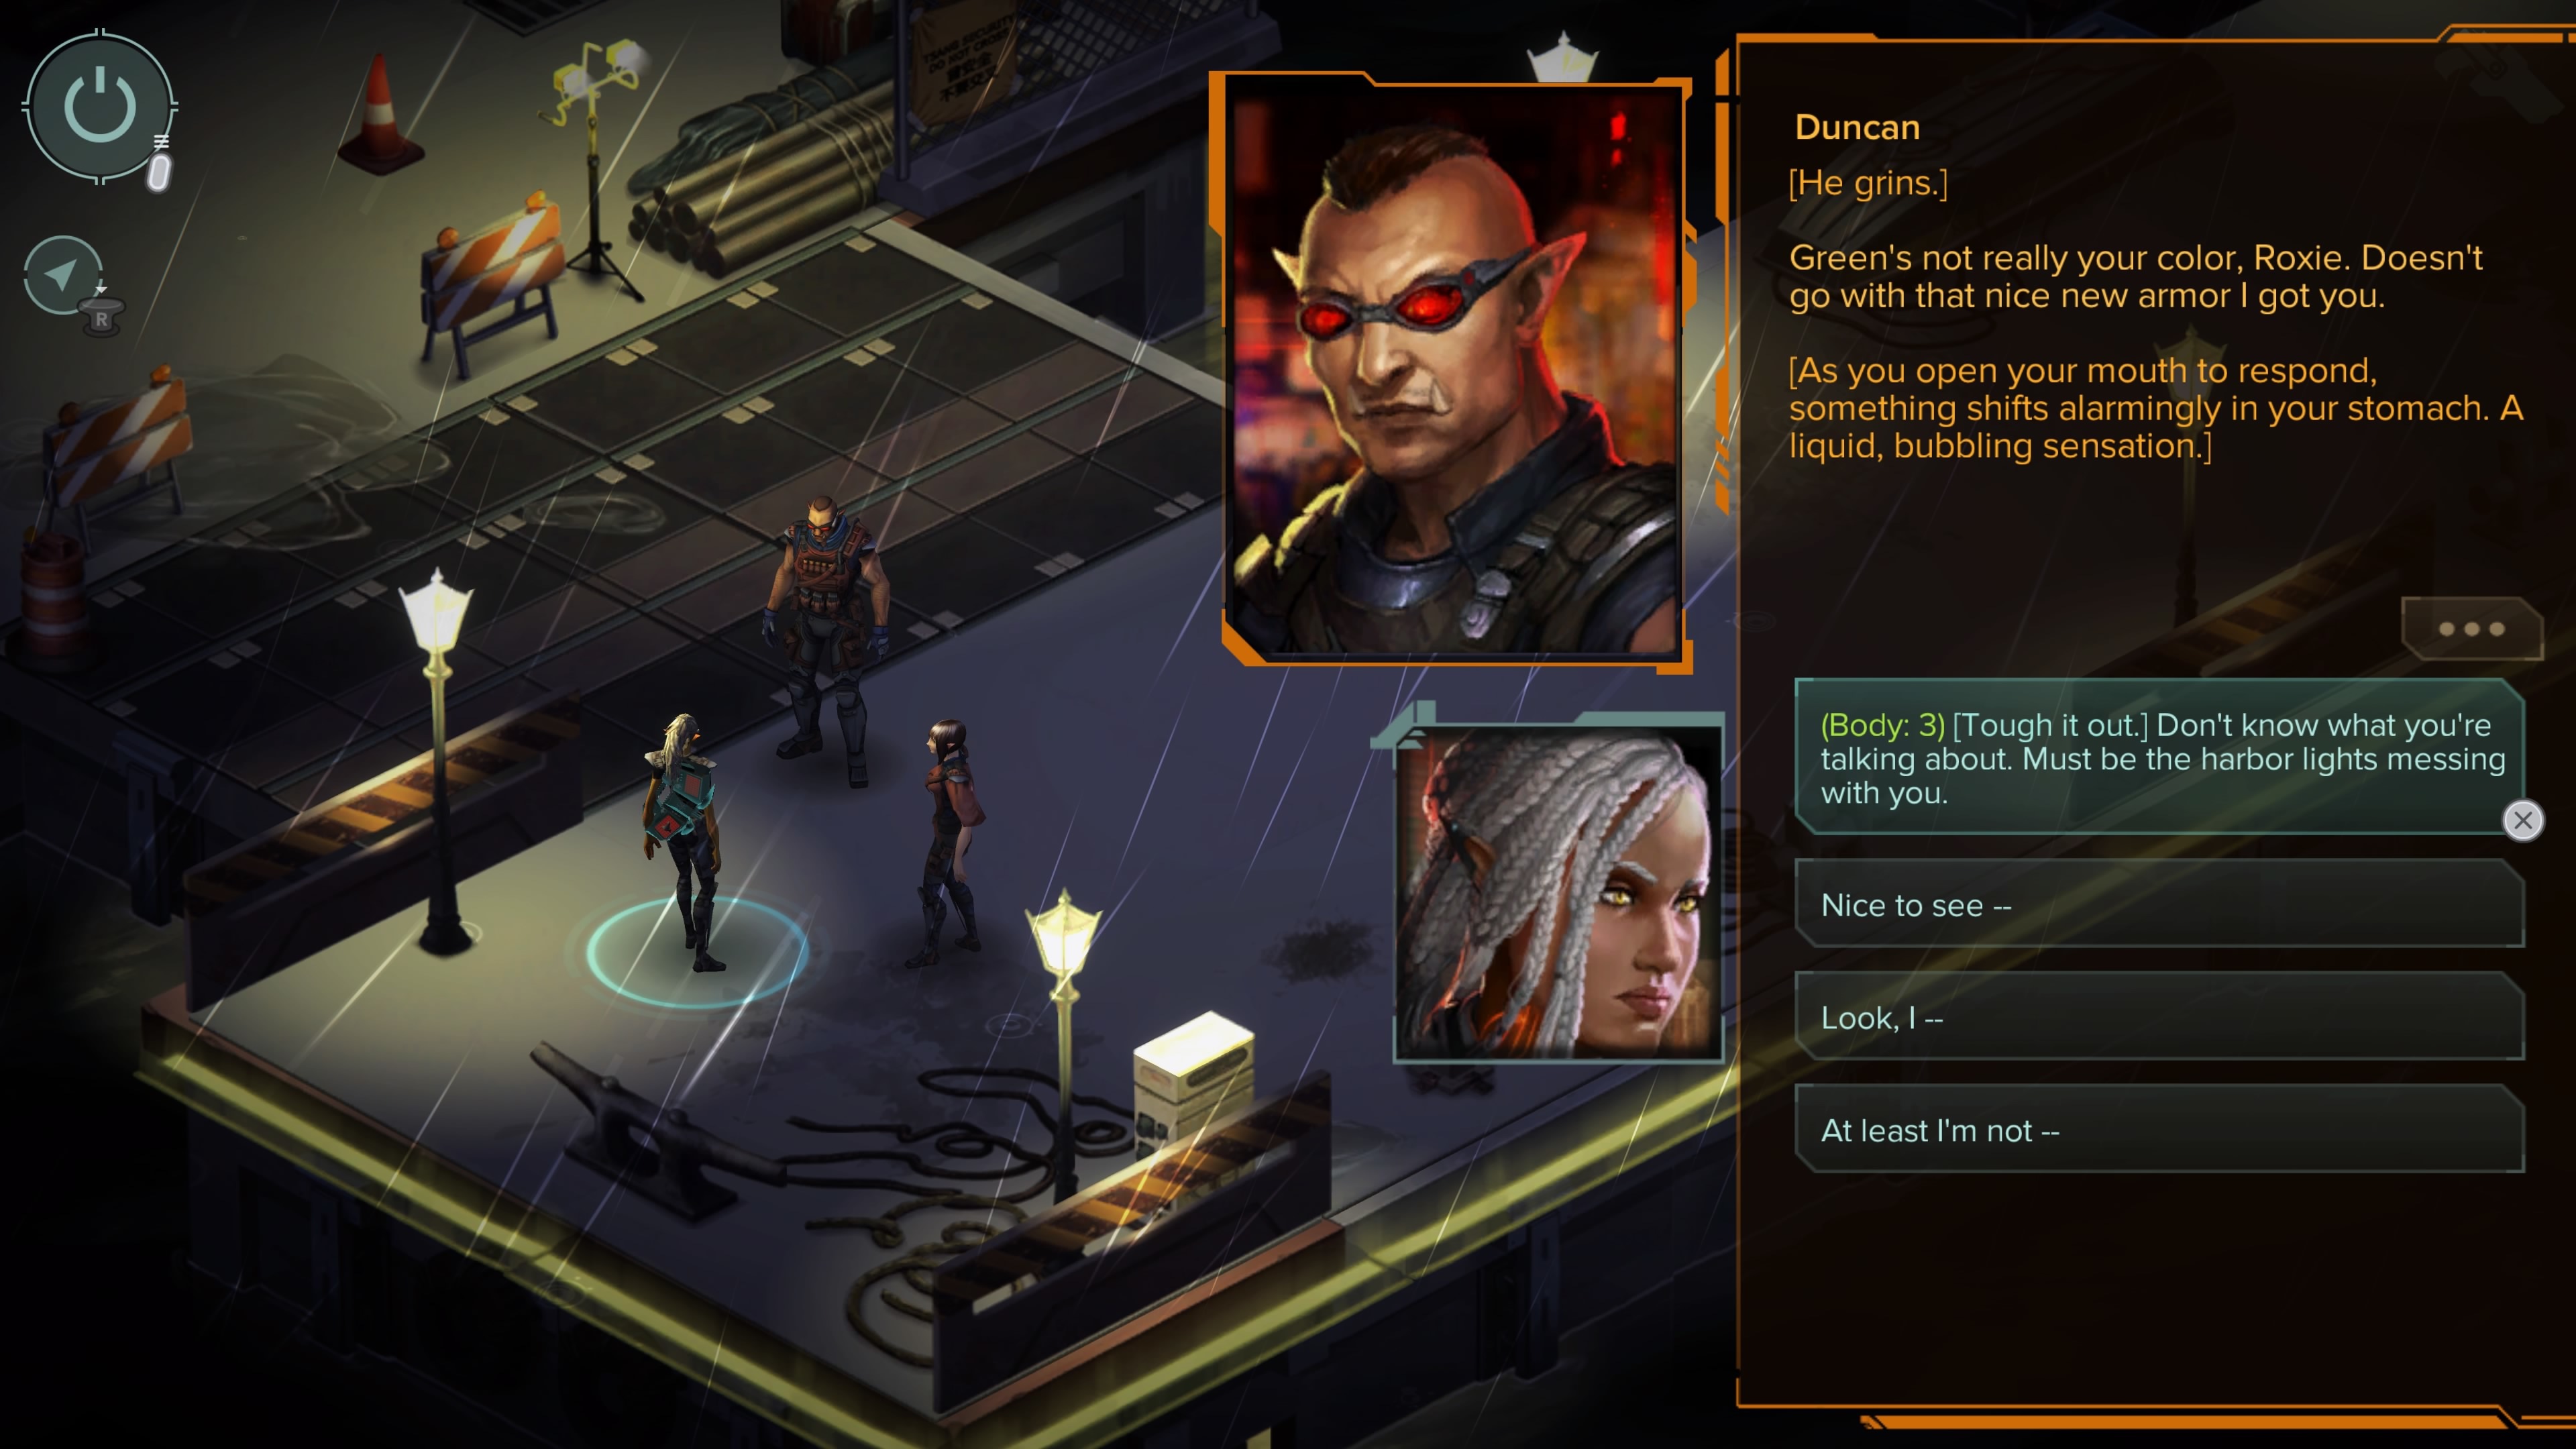 Опасный мир киберпанка: Обзор Shadowrun Trilogy